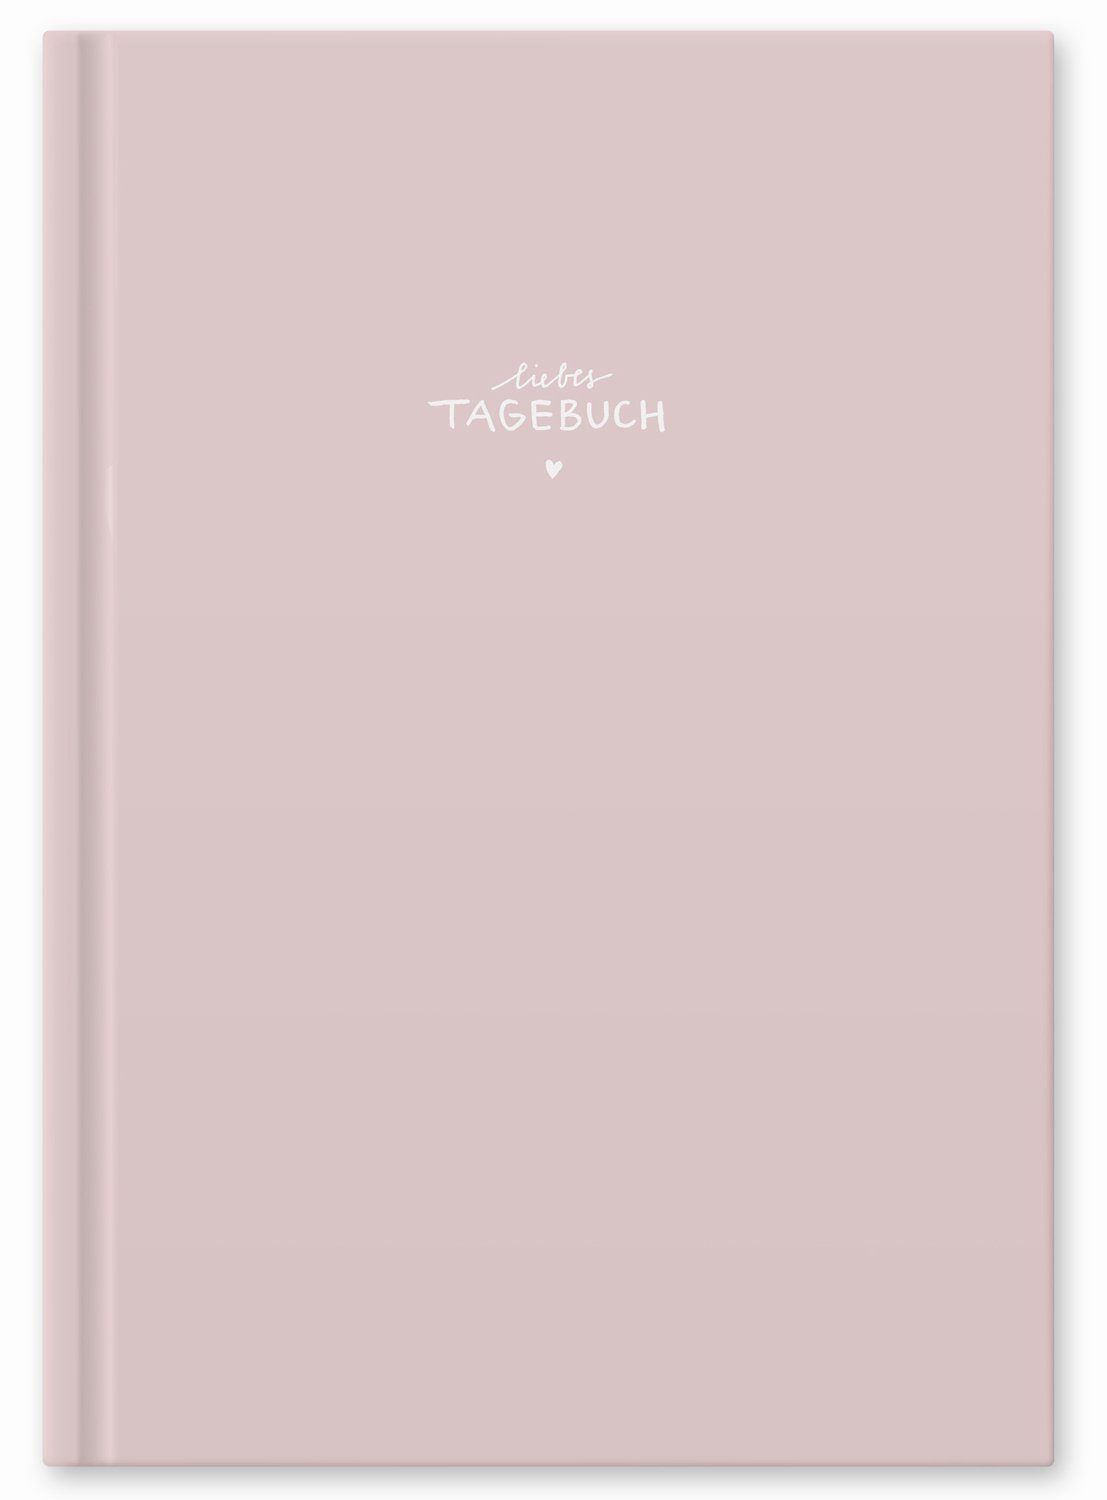 Eine der Guten Verlag Tagebuch Liebes Tagebuch - großes Notizbuch rosa, liniert, 120 Seiten, 80 g FSC Papier, Hardcover 17x24 cm mit Linien